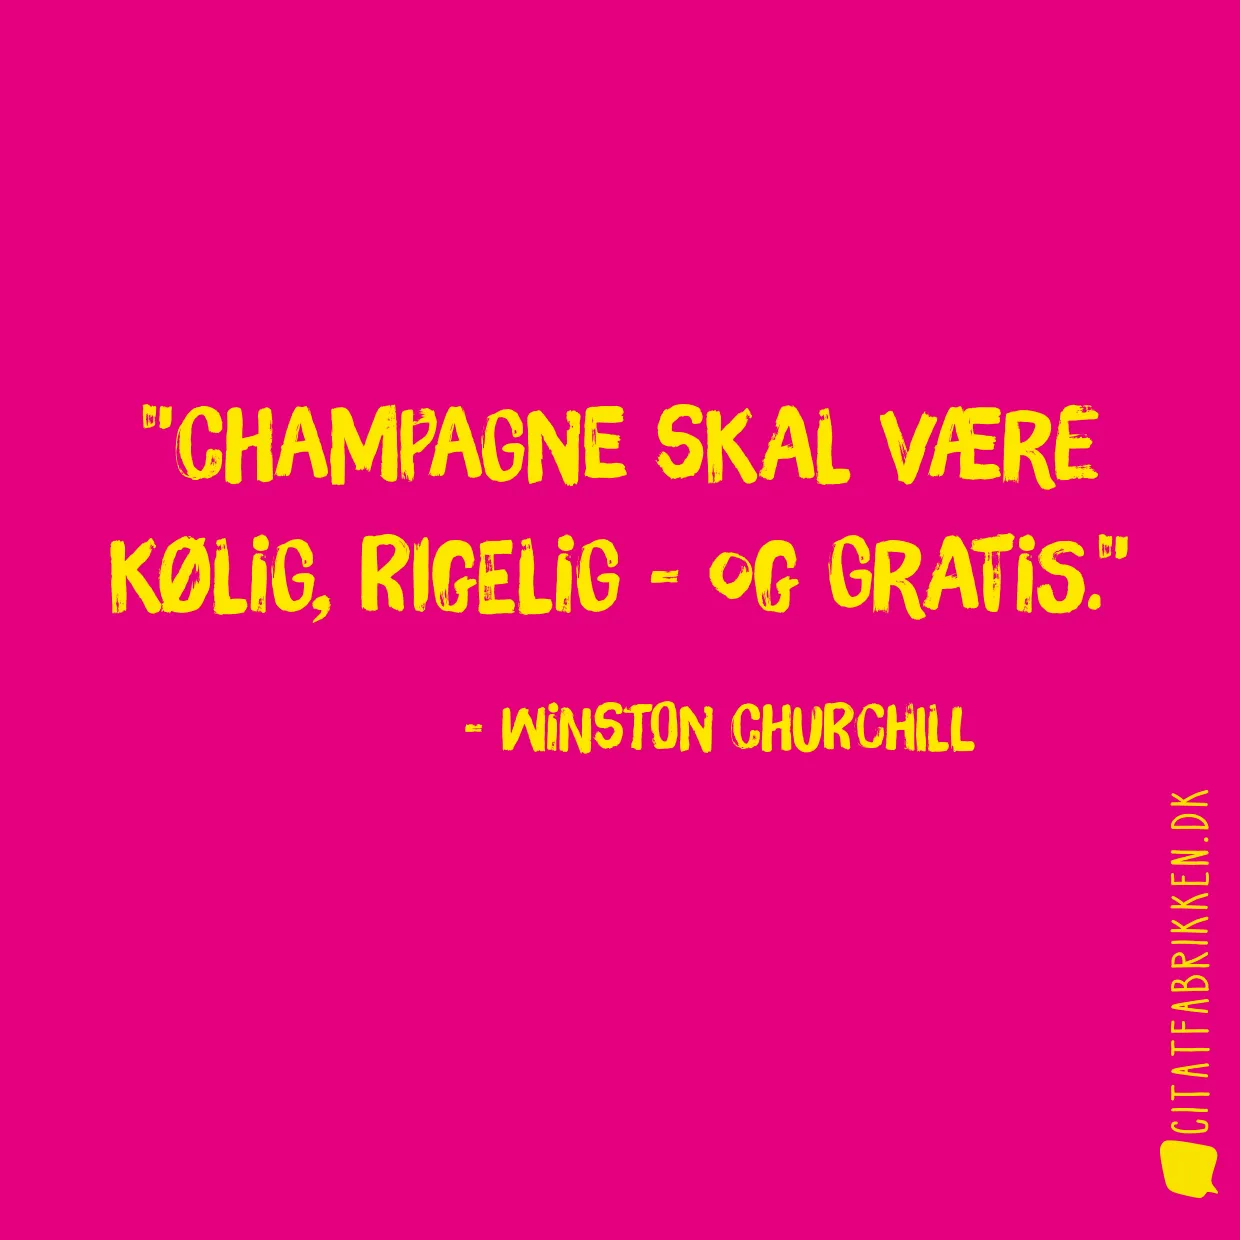 Champagne skal være kølig, rigelig - og gratis.